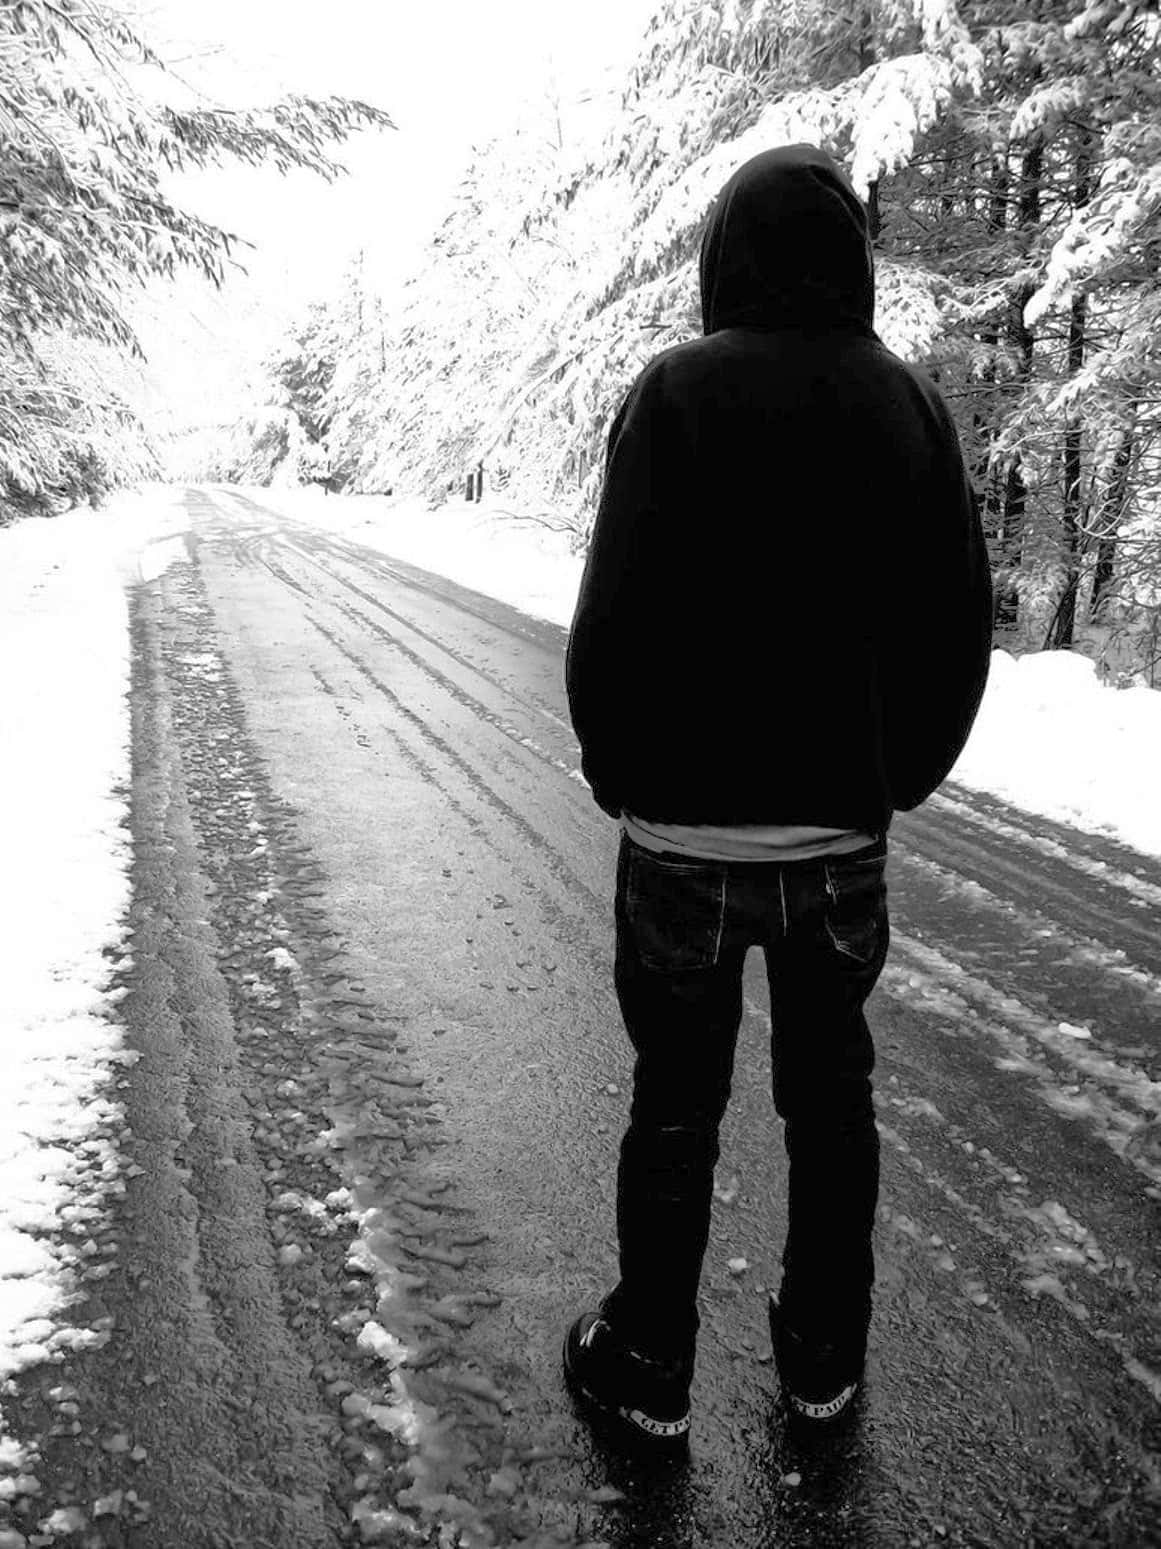 Imagende Un Chico Solo En Un Camino Nevado.